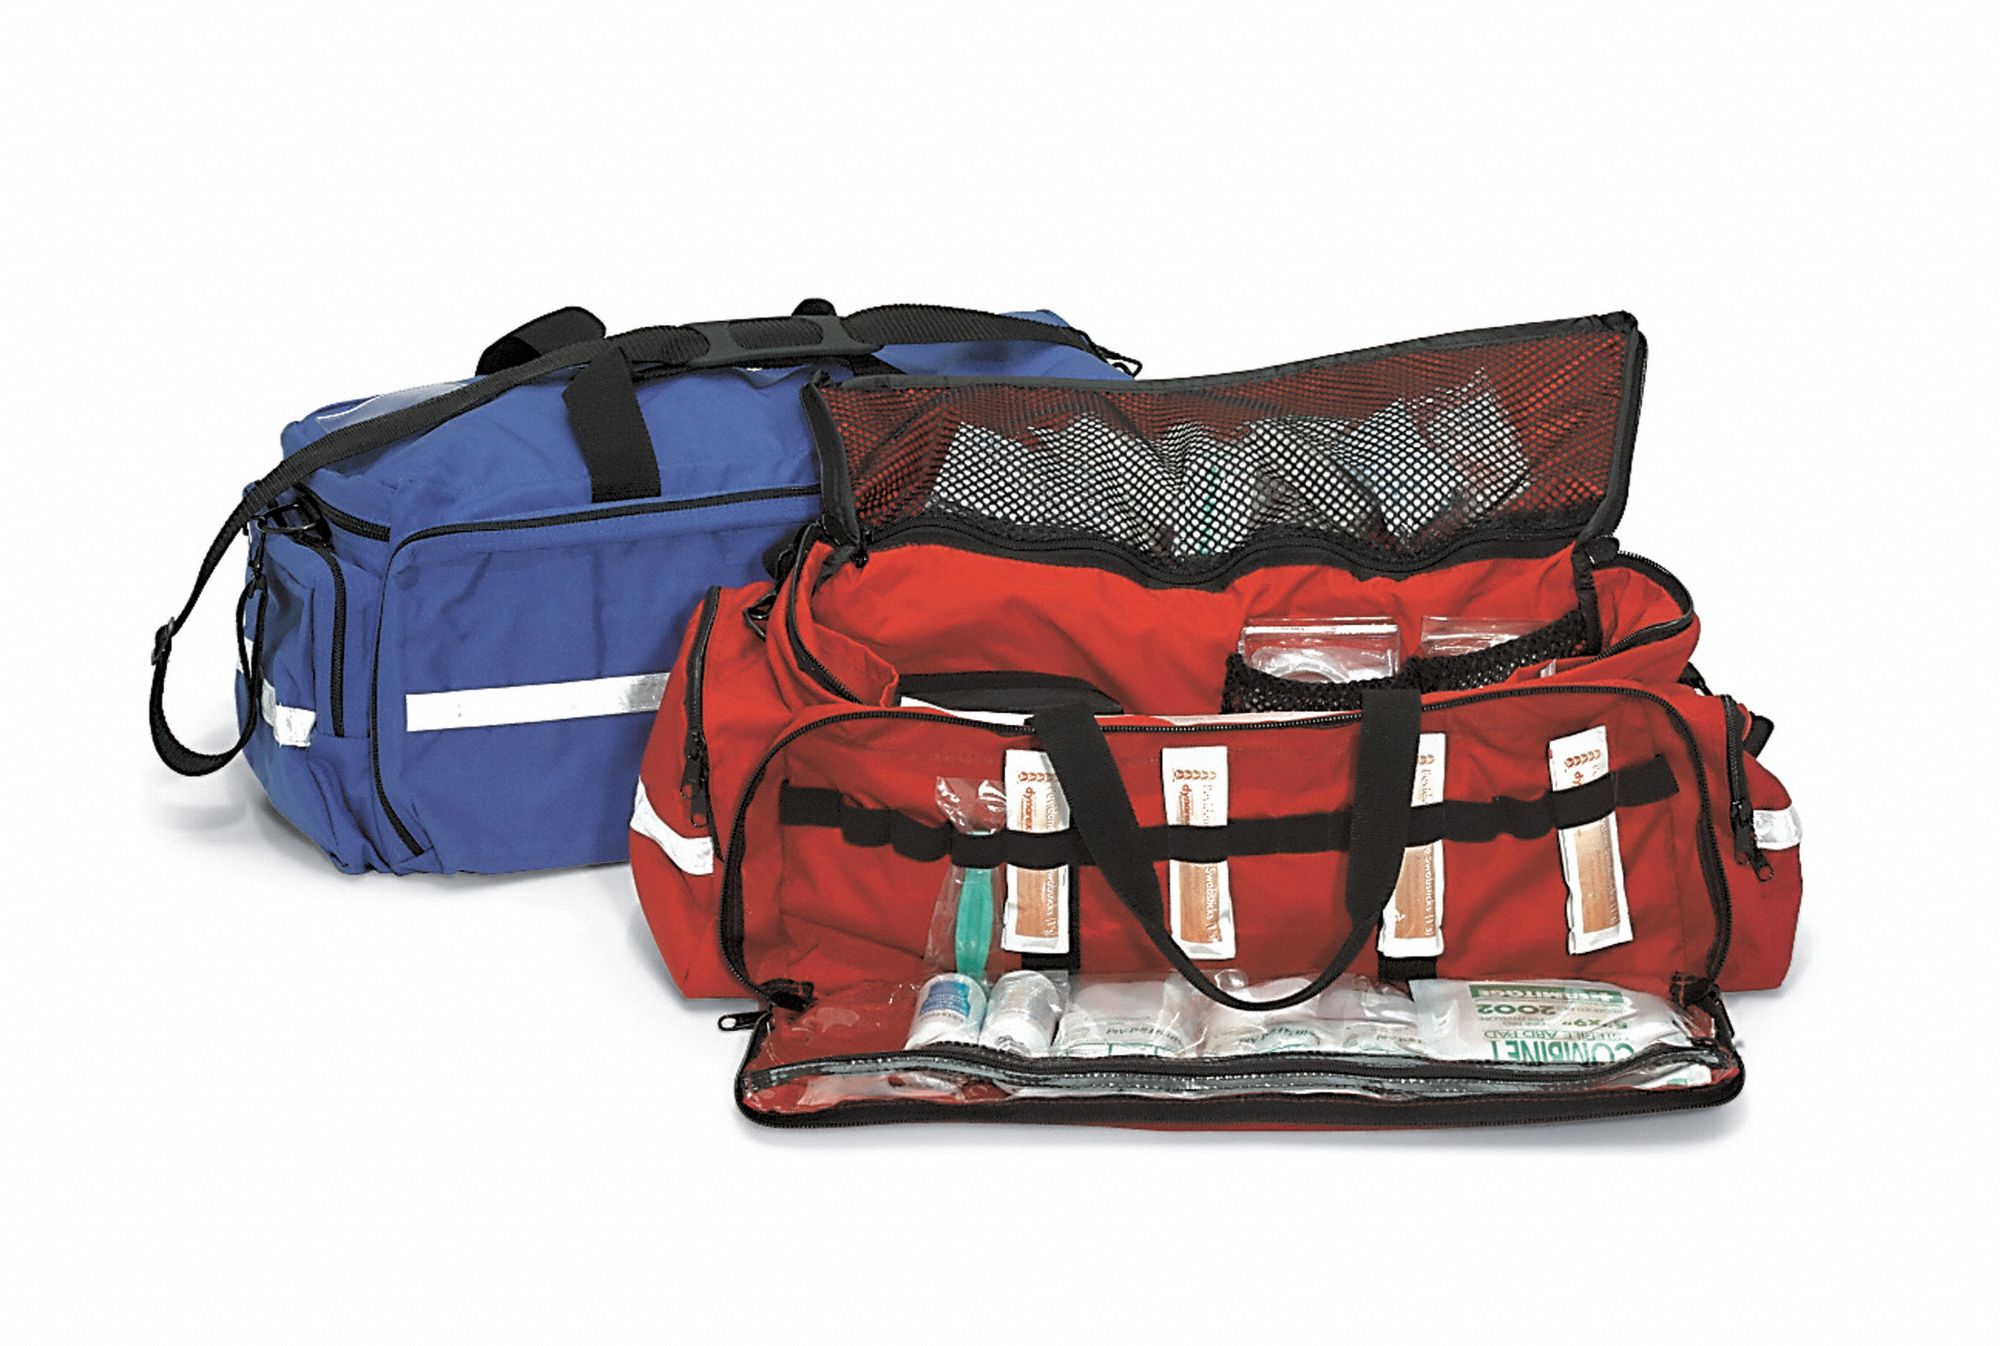 Trauma Bag: Red, 1000D Cordura, Zipper, 11 in Ht, 28 in Lg, 28 in Wd